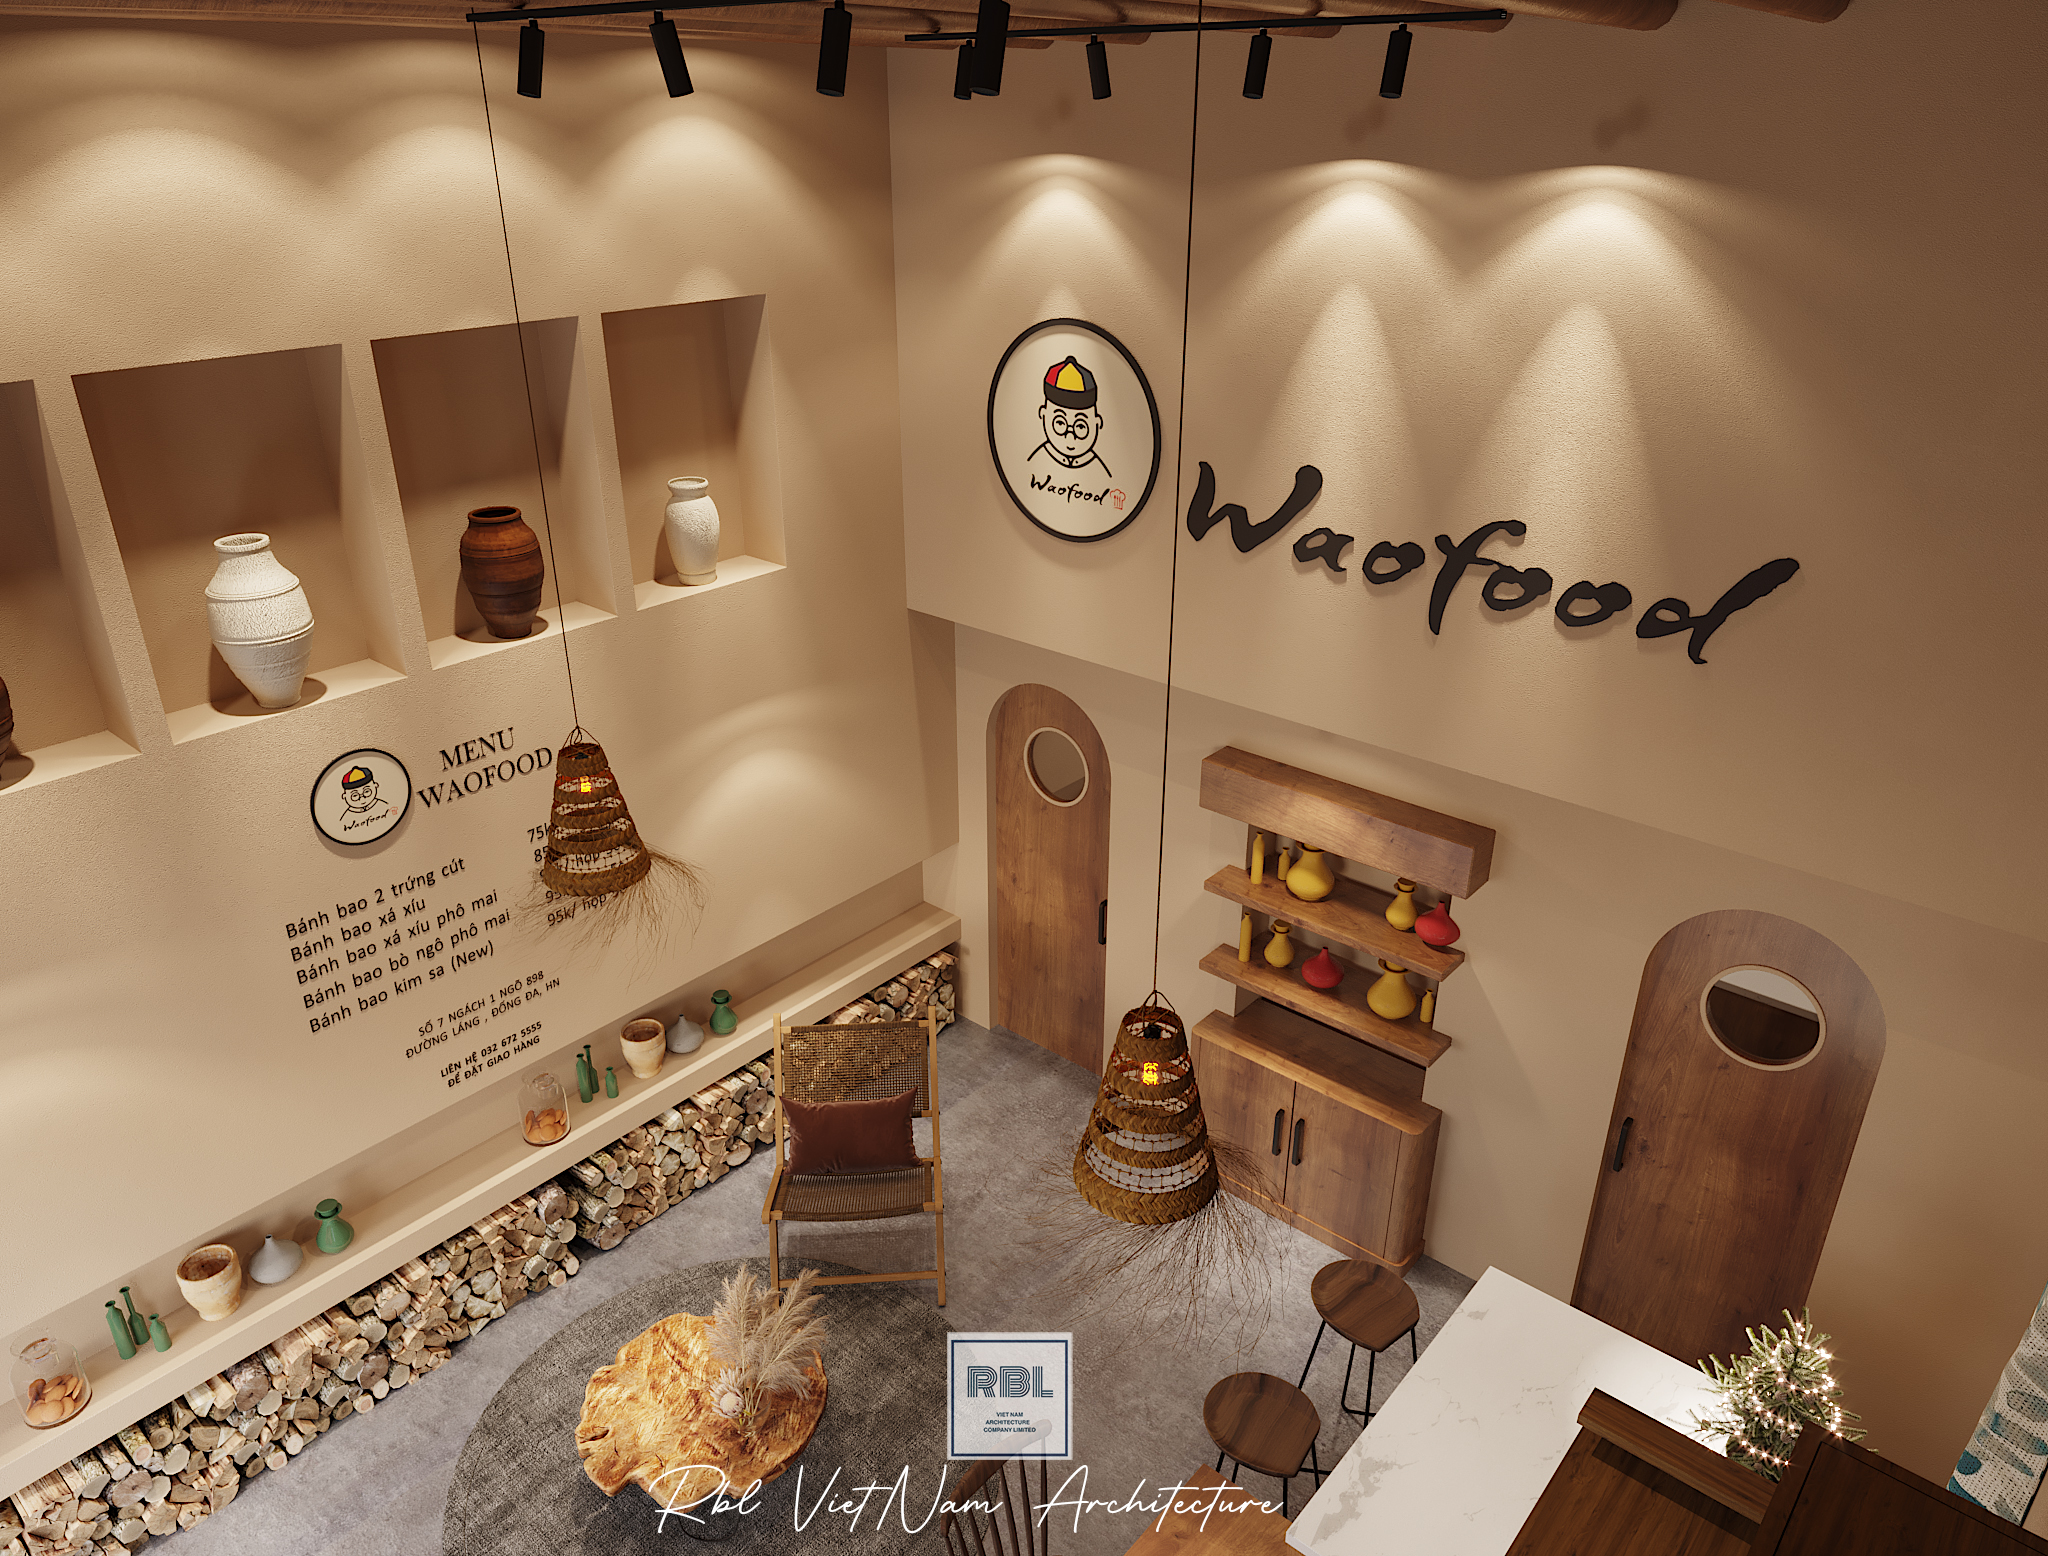 Thiết kế nội thất Nhà Hàng tại Hà Nội Cải tạo cửa hàng Waofood 1665148533 5